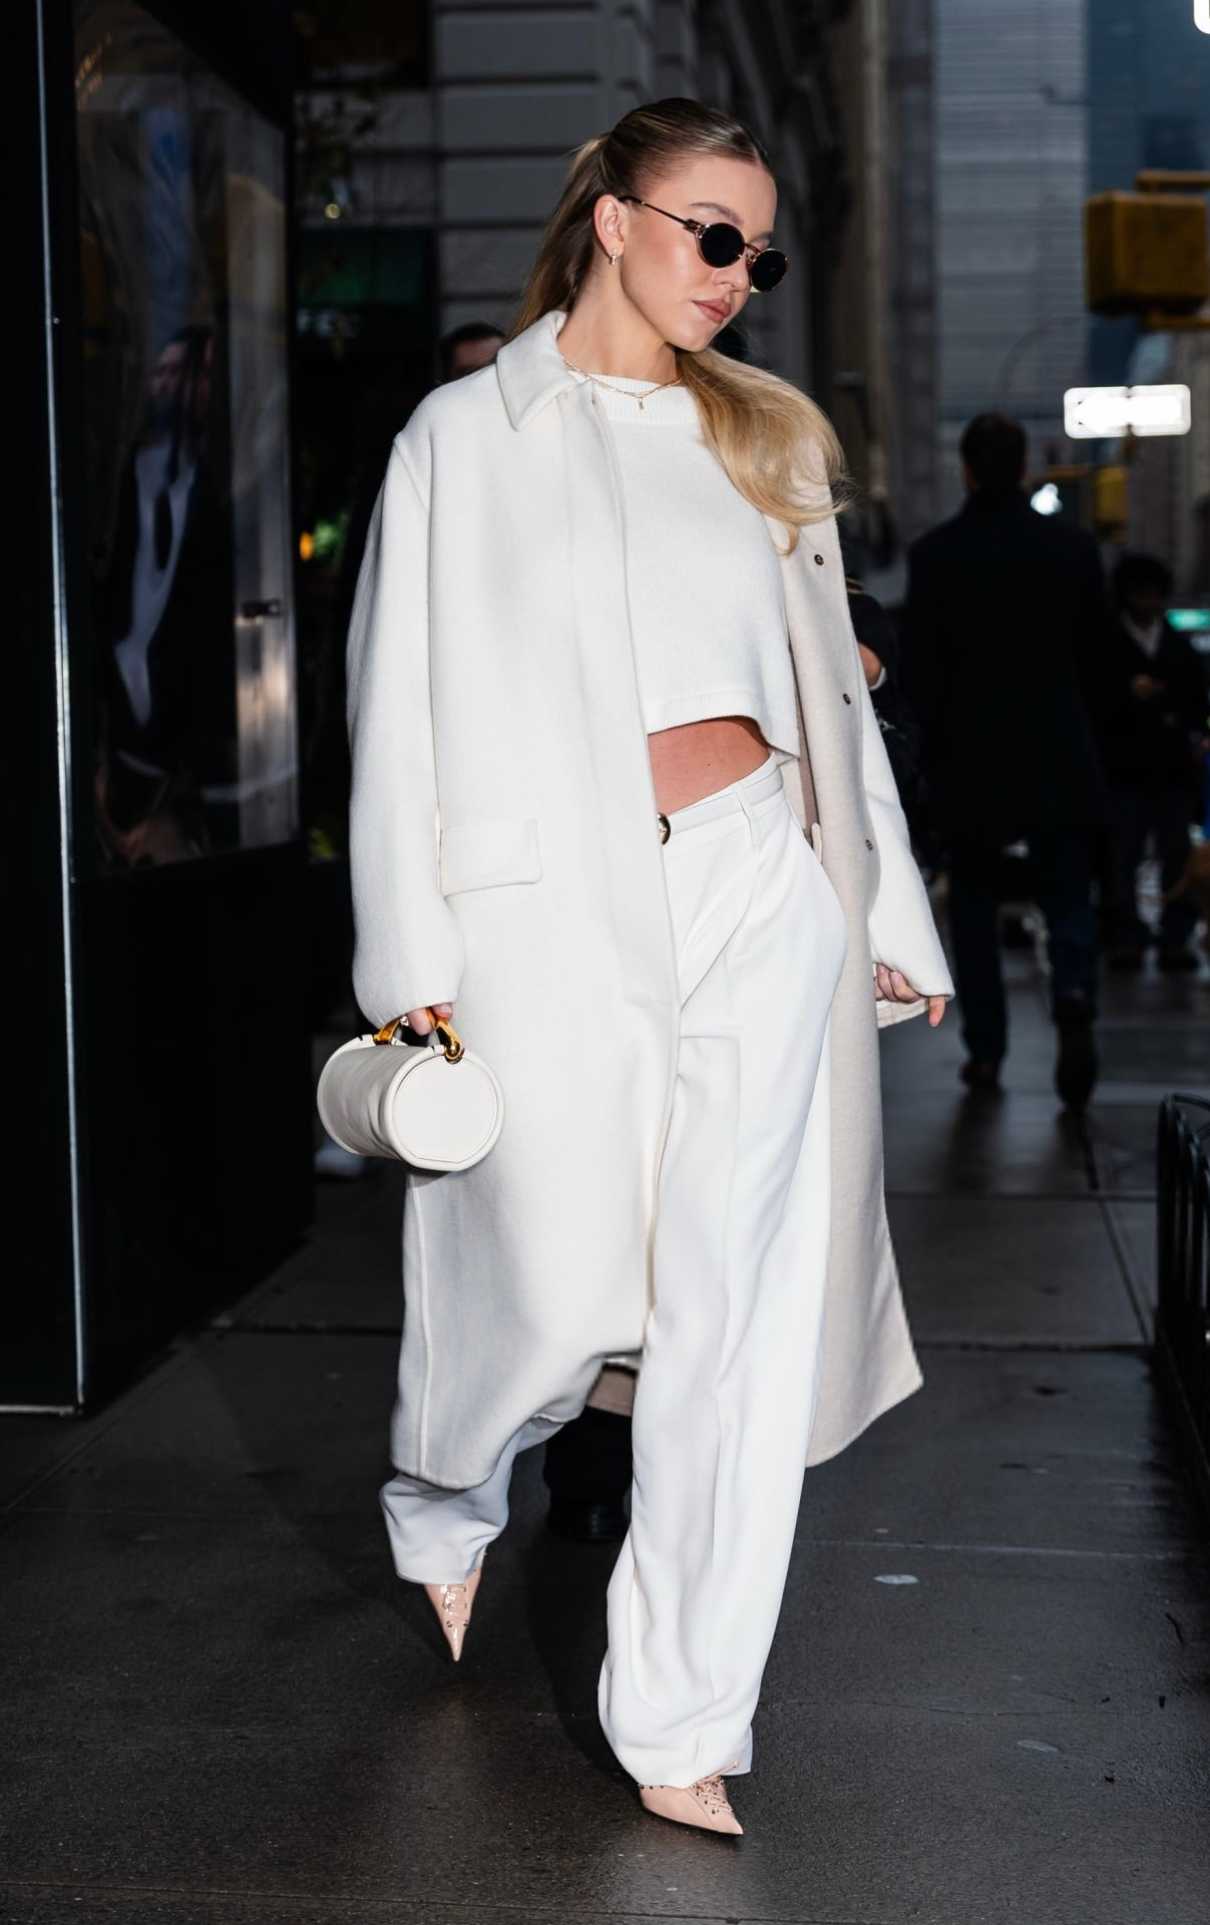 Sydney Sweeney in a White Coat